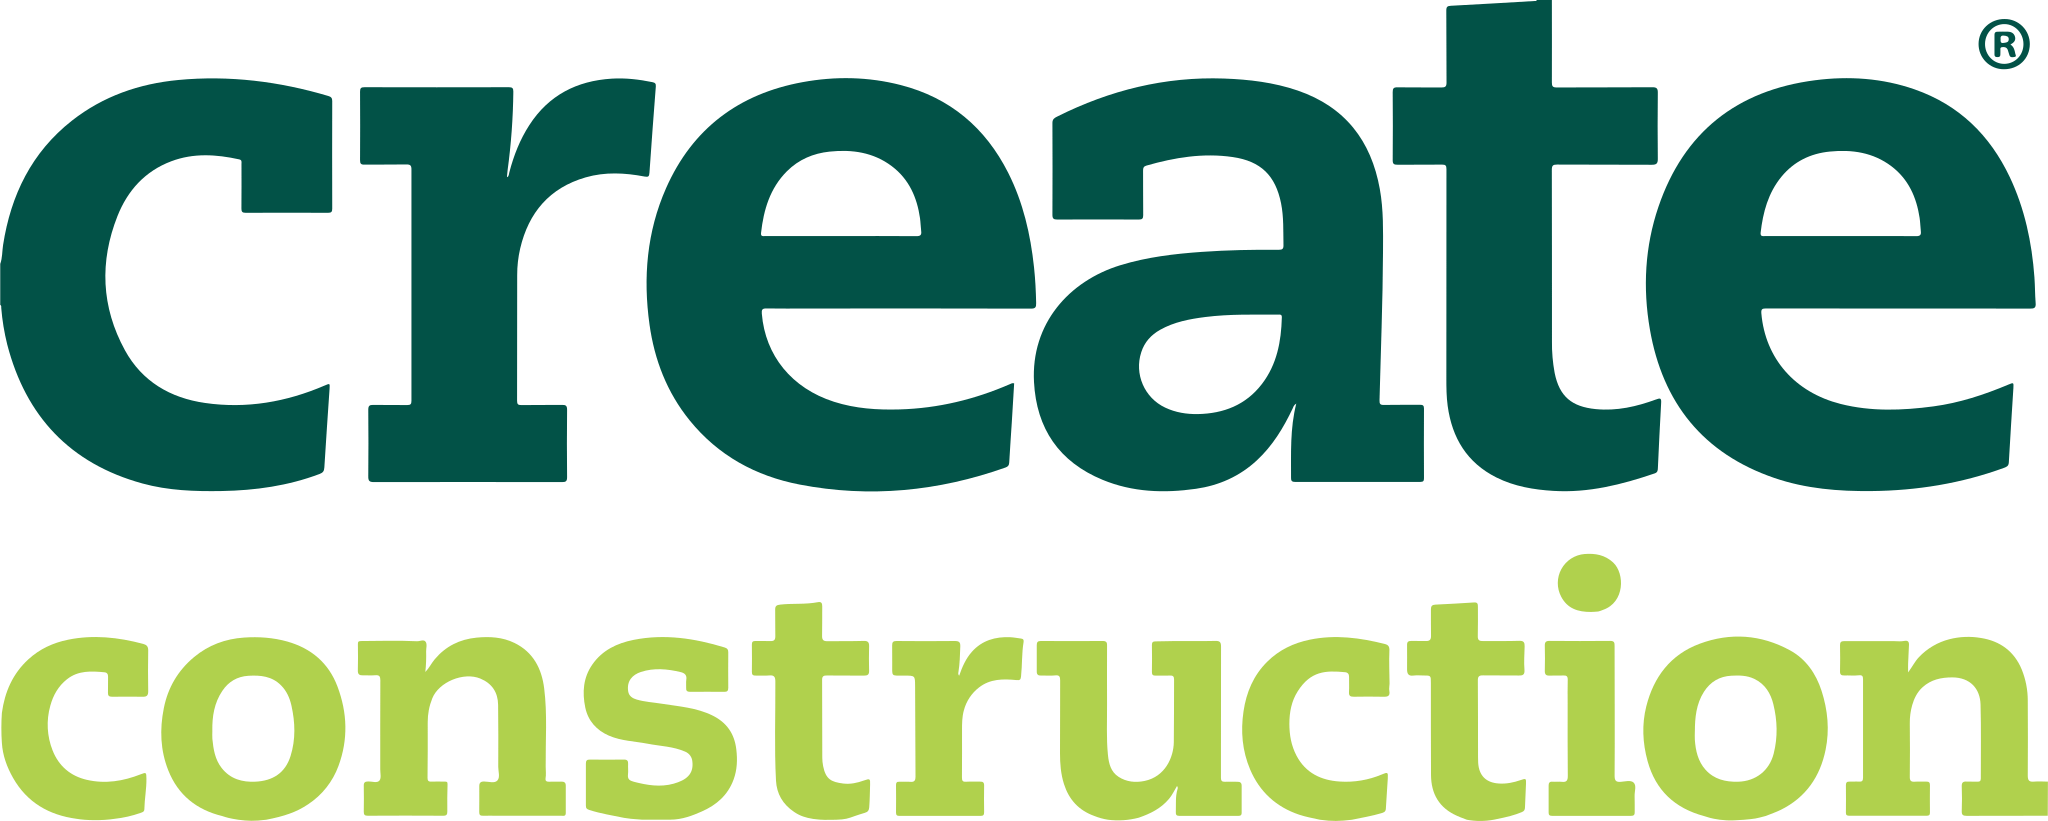 Create Construction logo